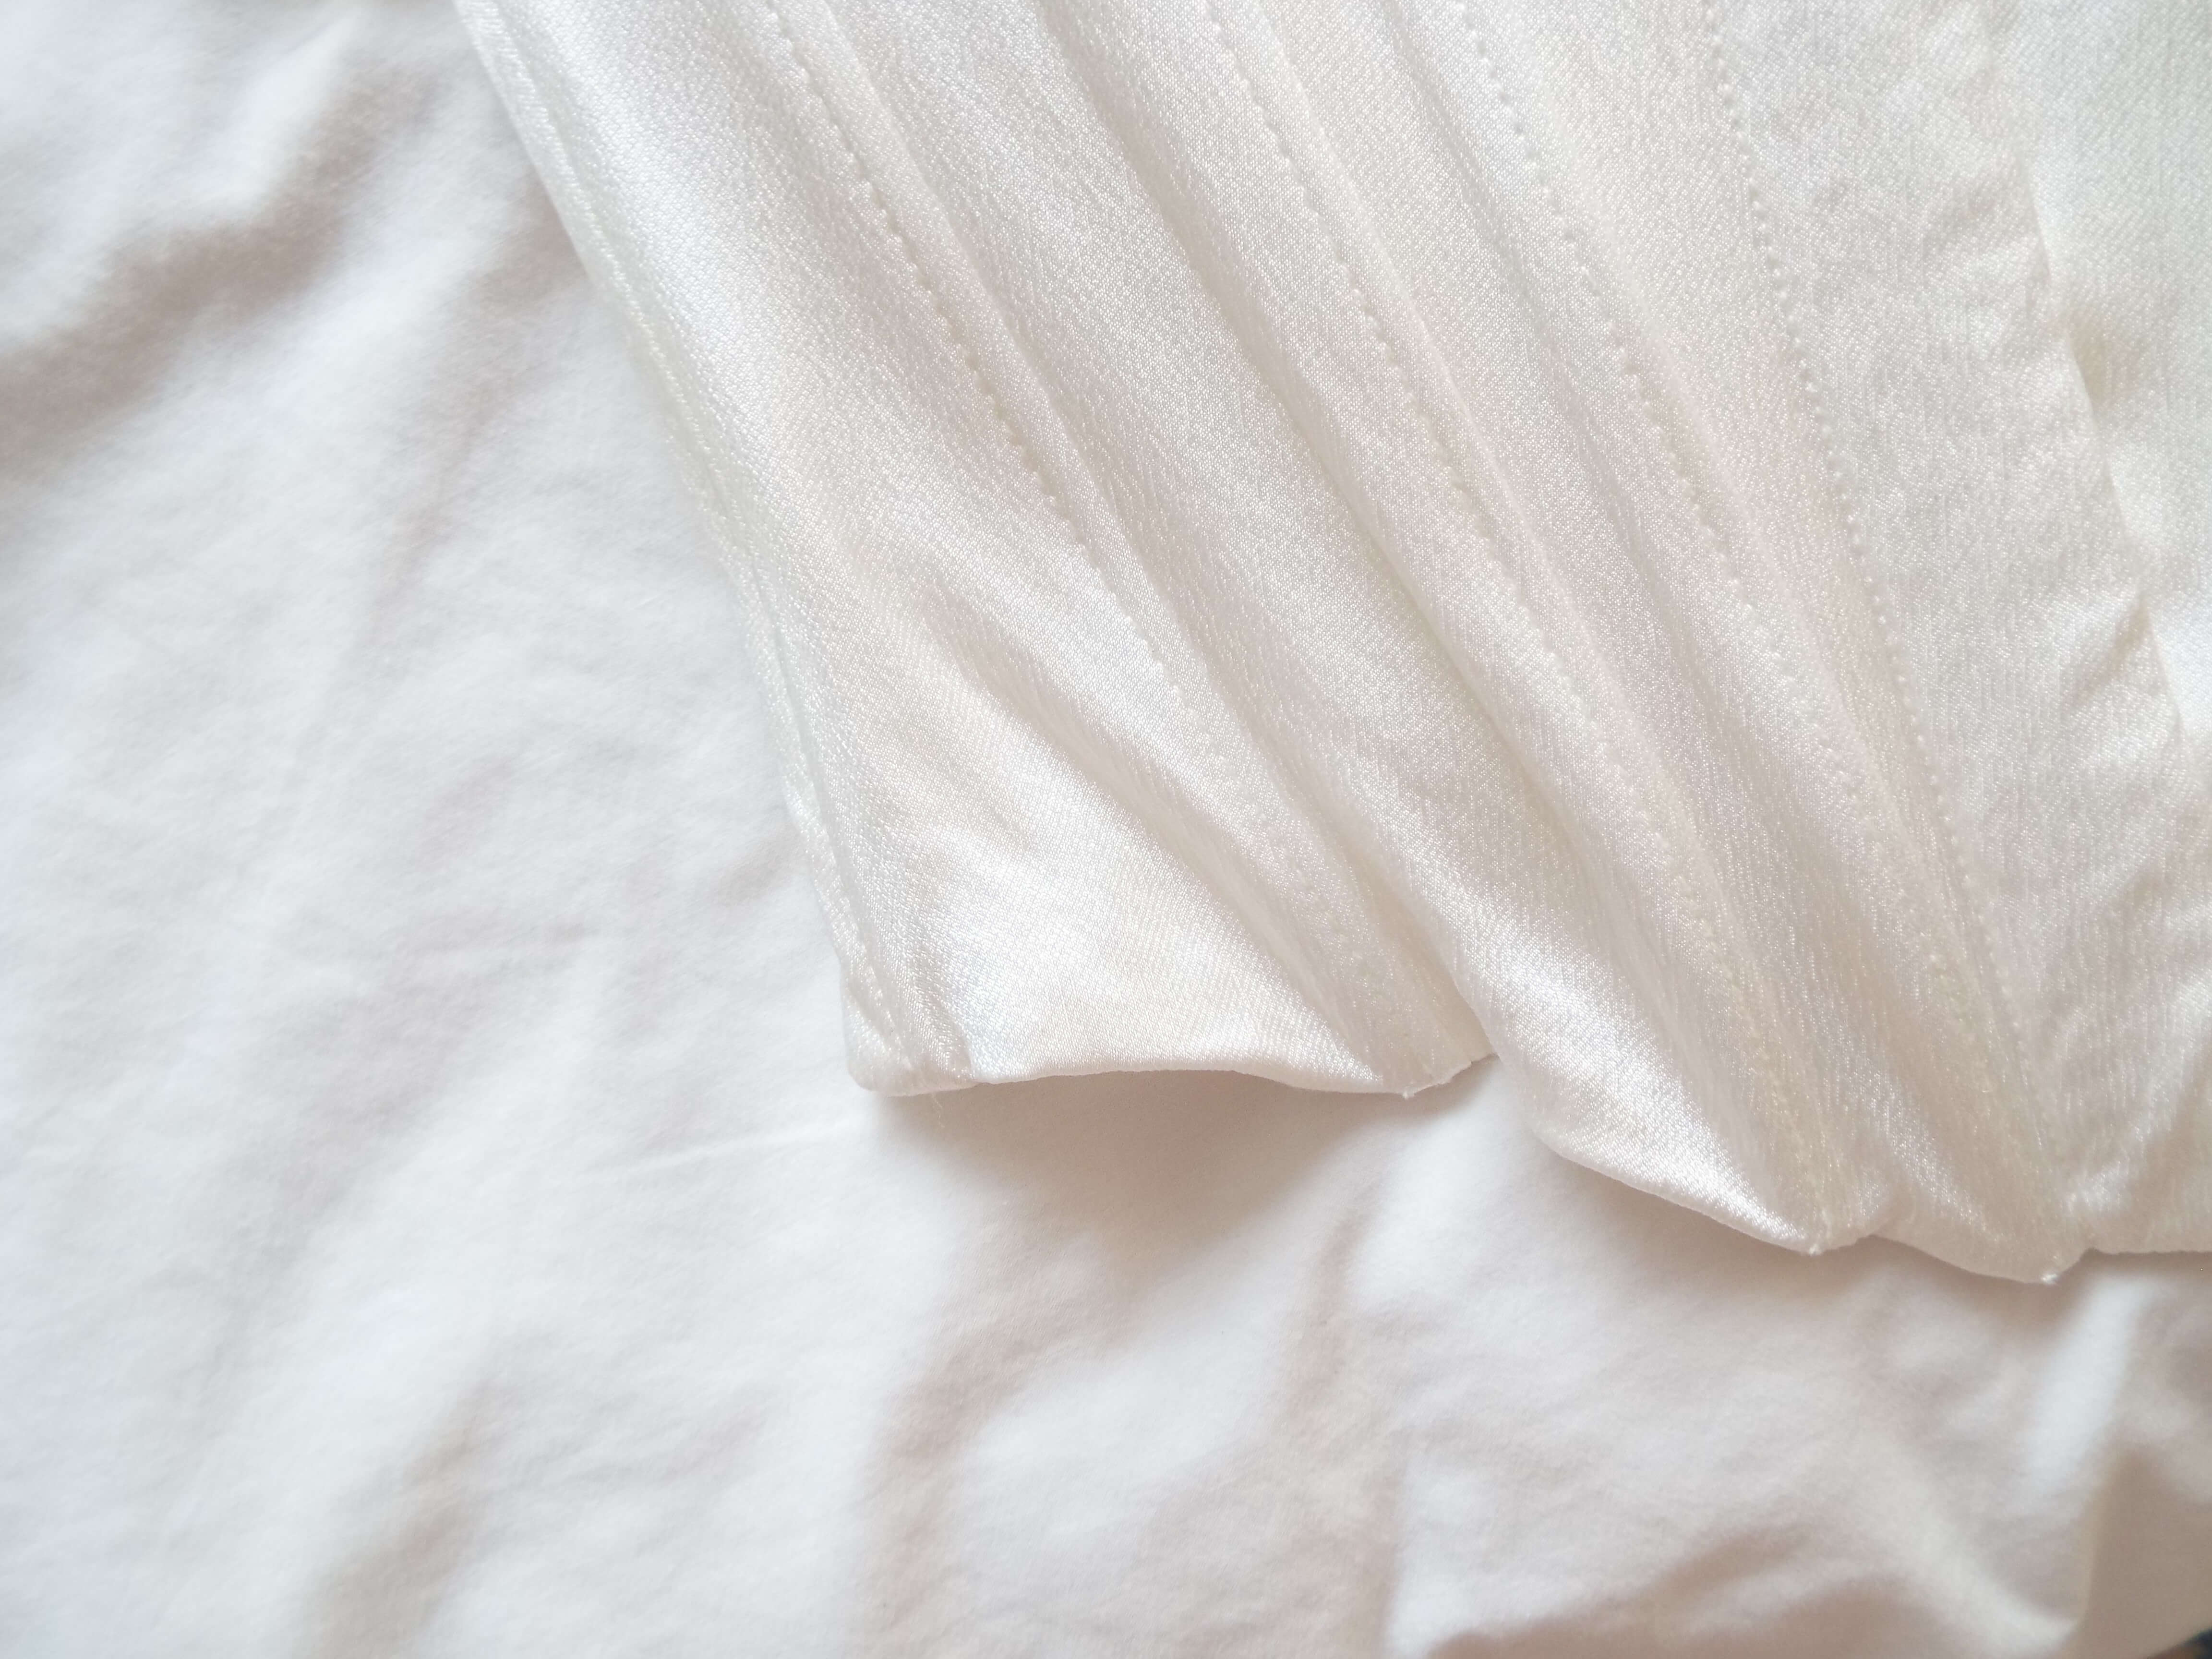 Satin white corset lay on white bedding.